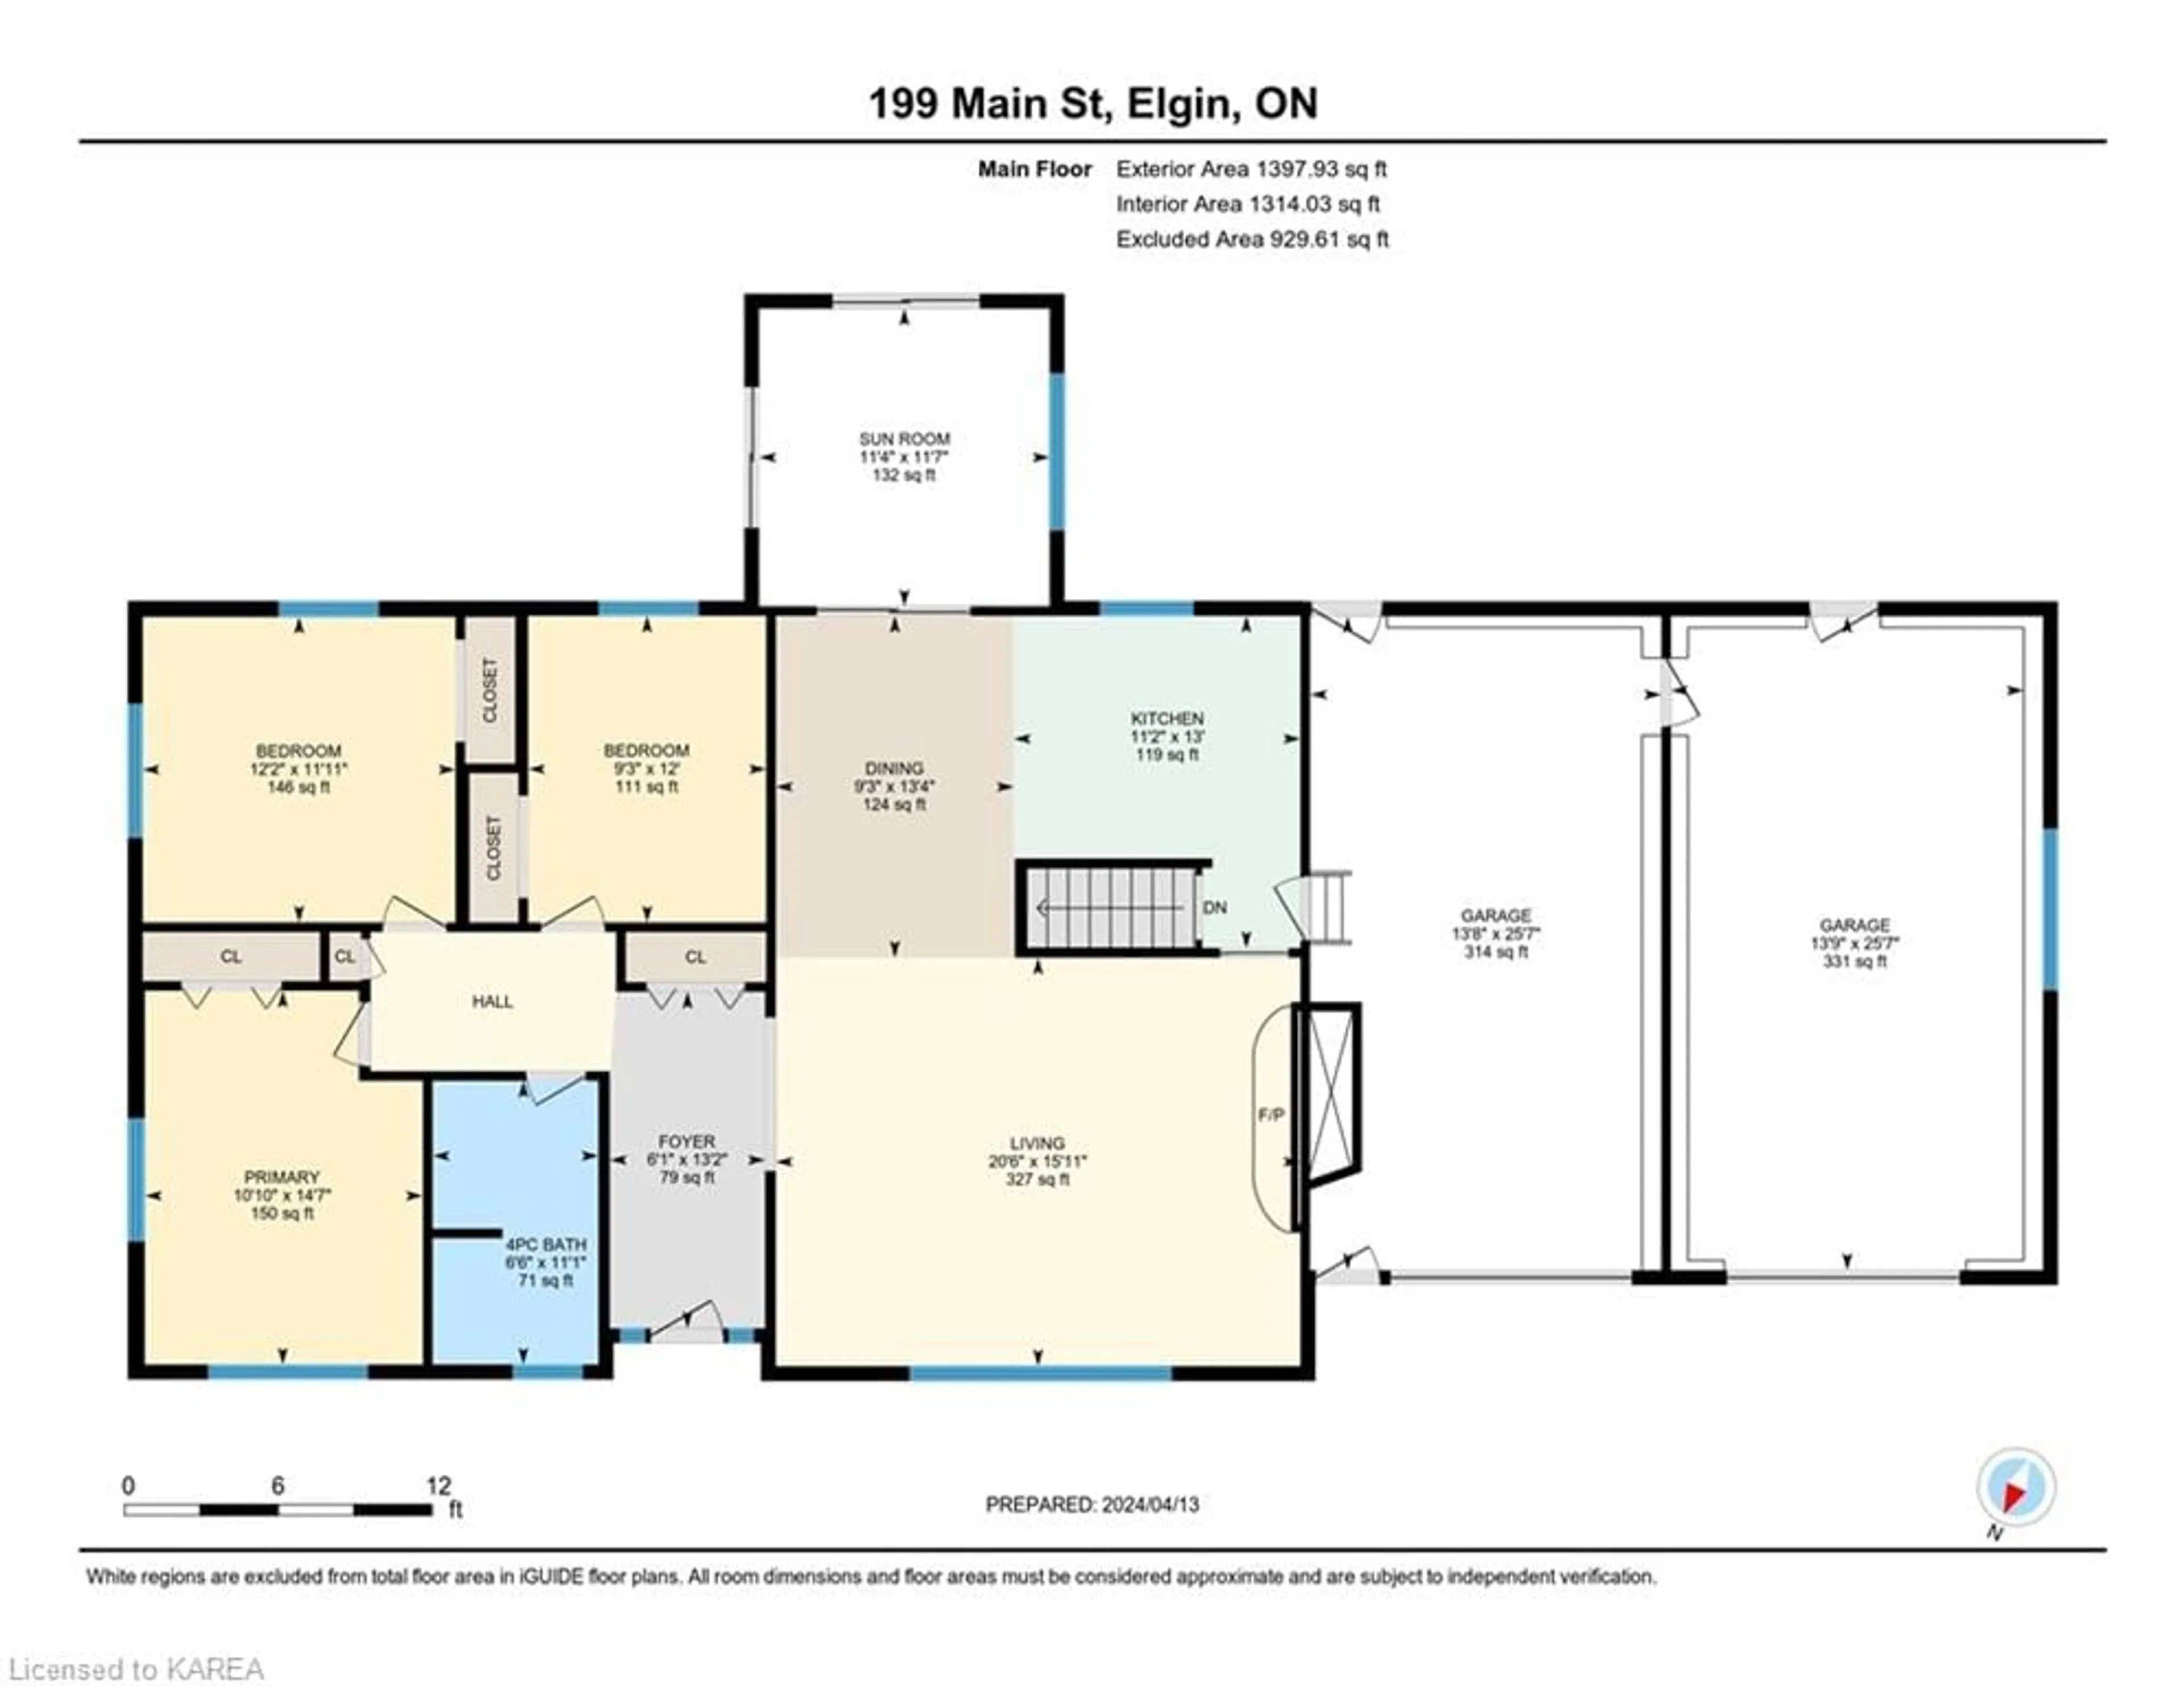 Floor plan for 199 Main St, Elgin Ontario K0G 1E0